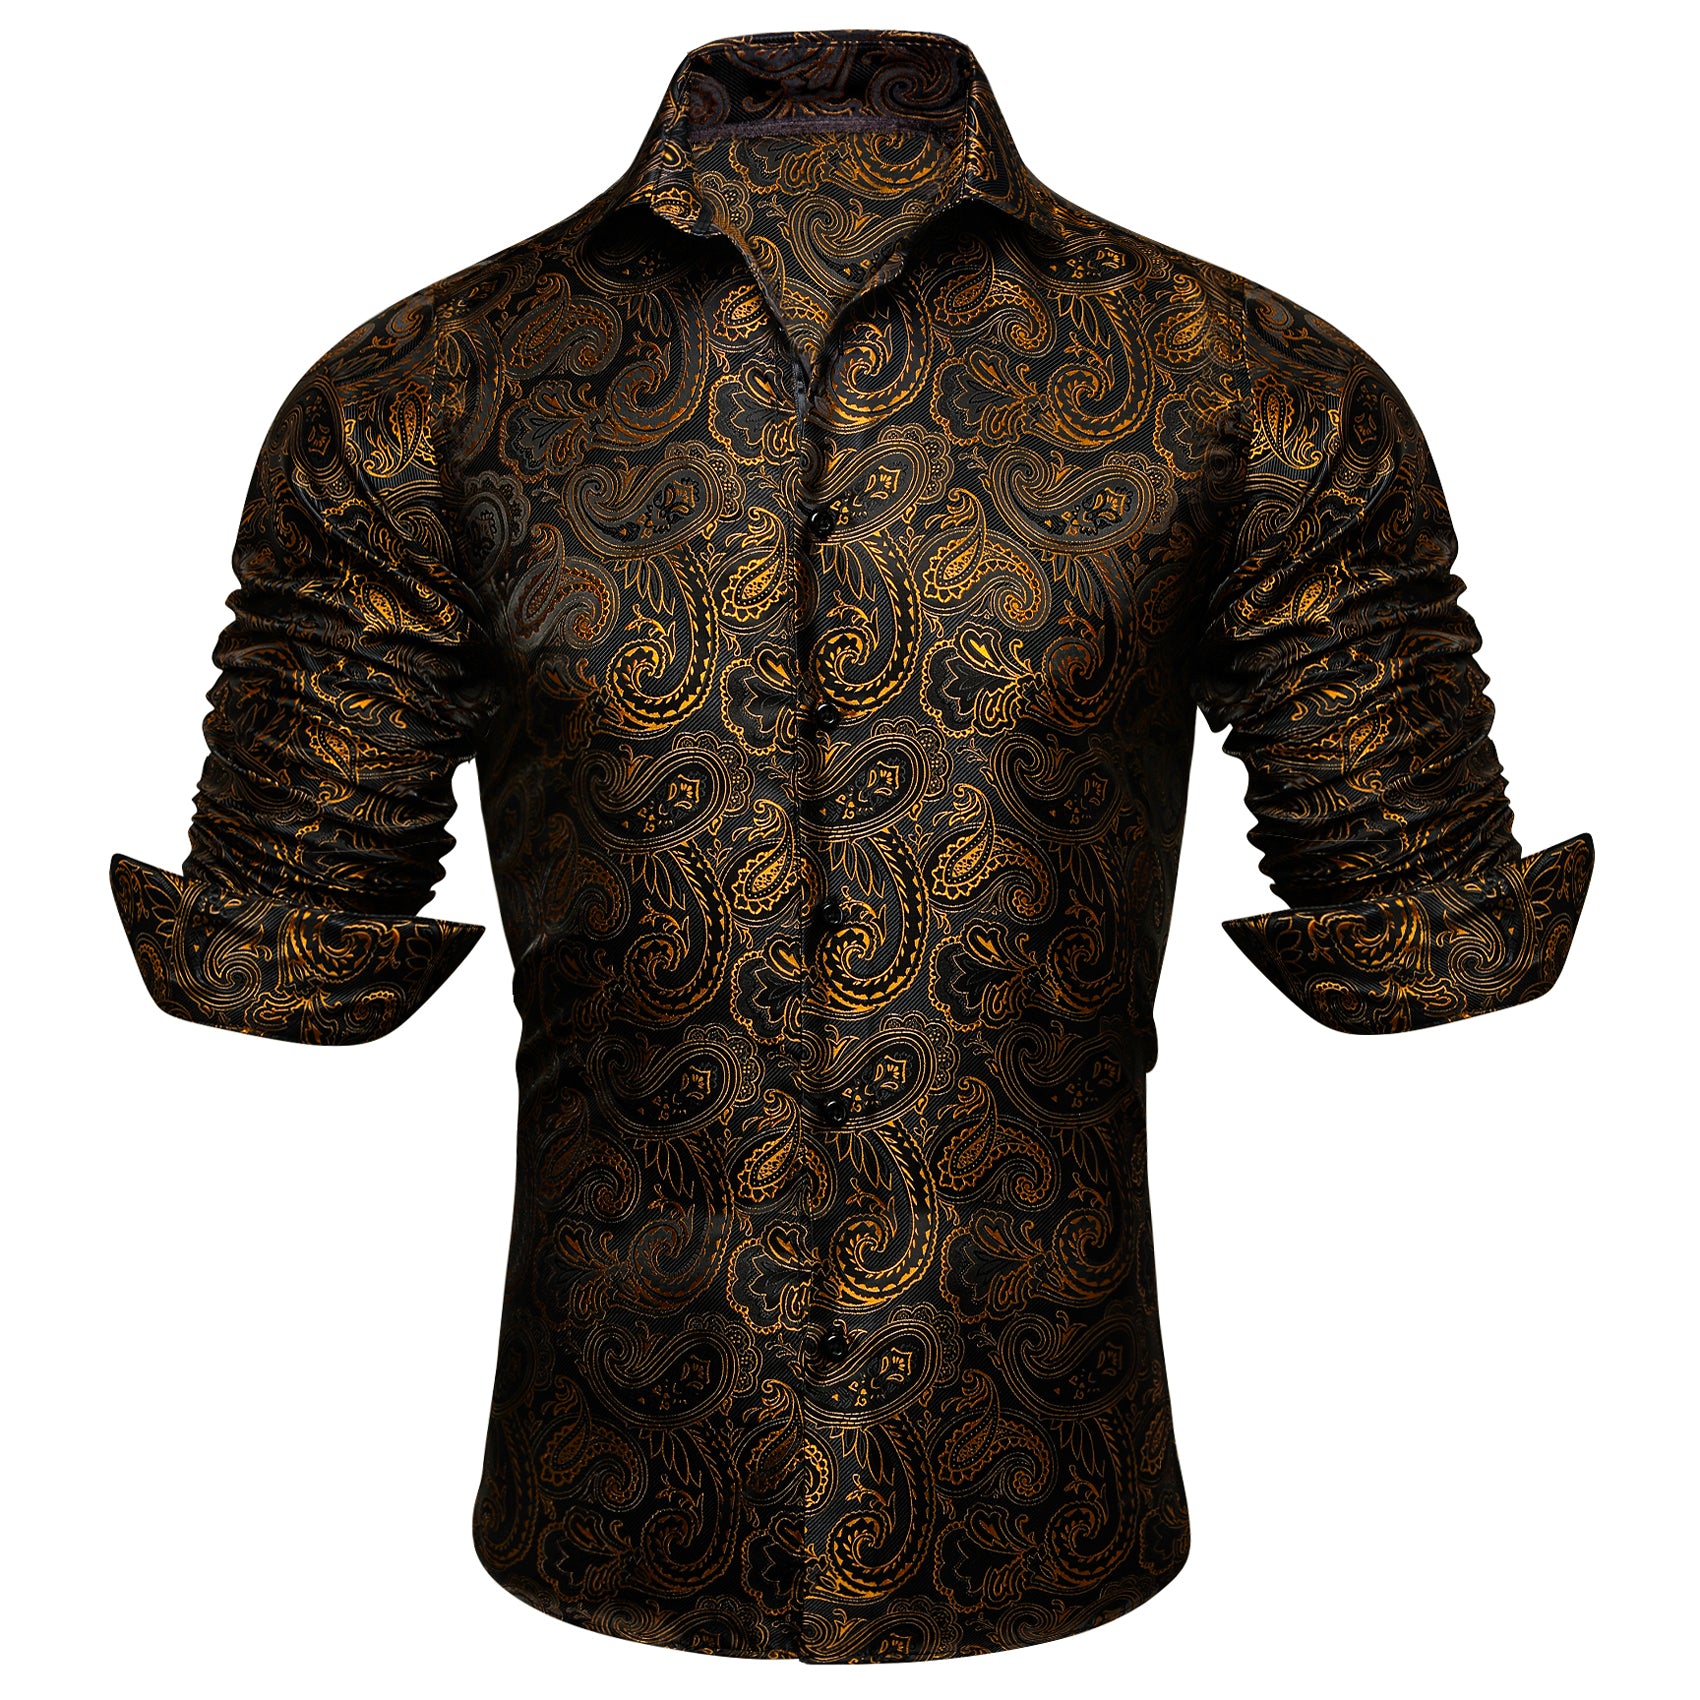 Barry Wang Long Sleeve Shirt Black Golden Paisley Silk Shirt